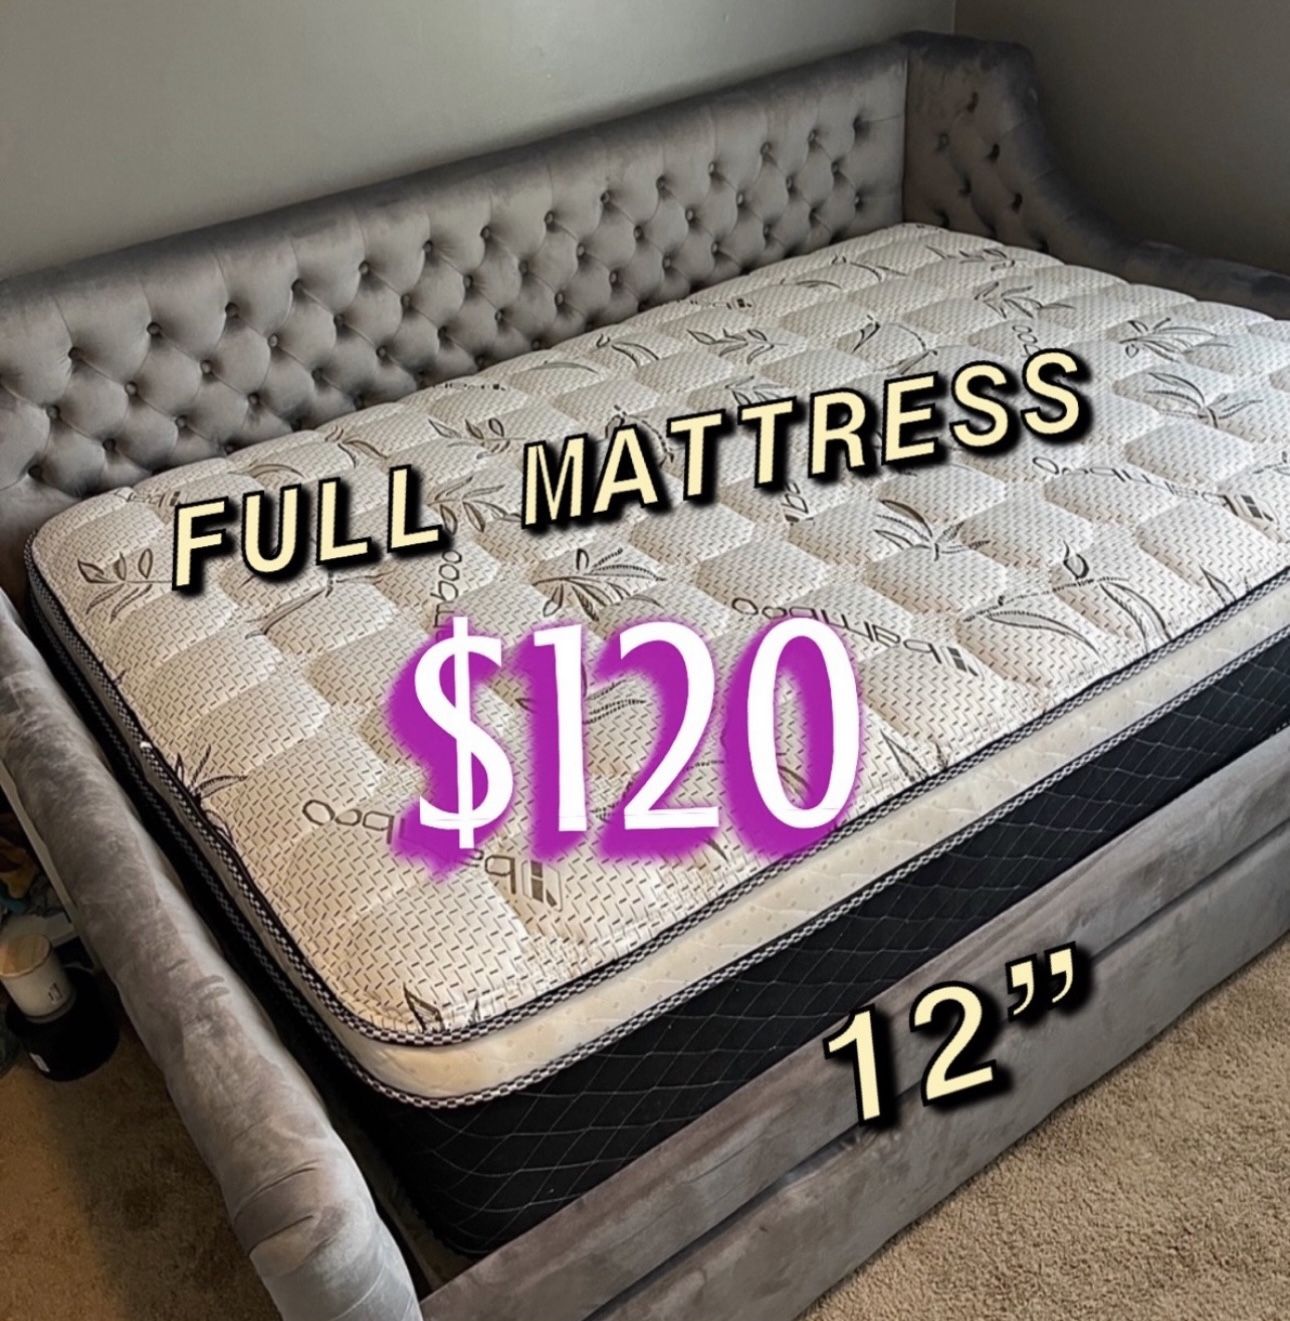 New Full Mattress $120